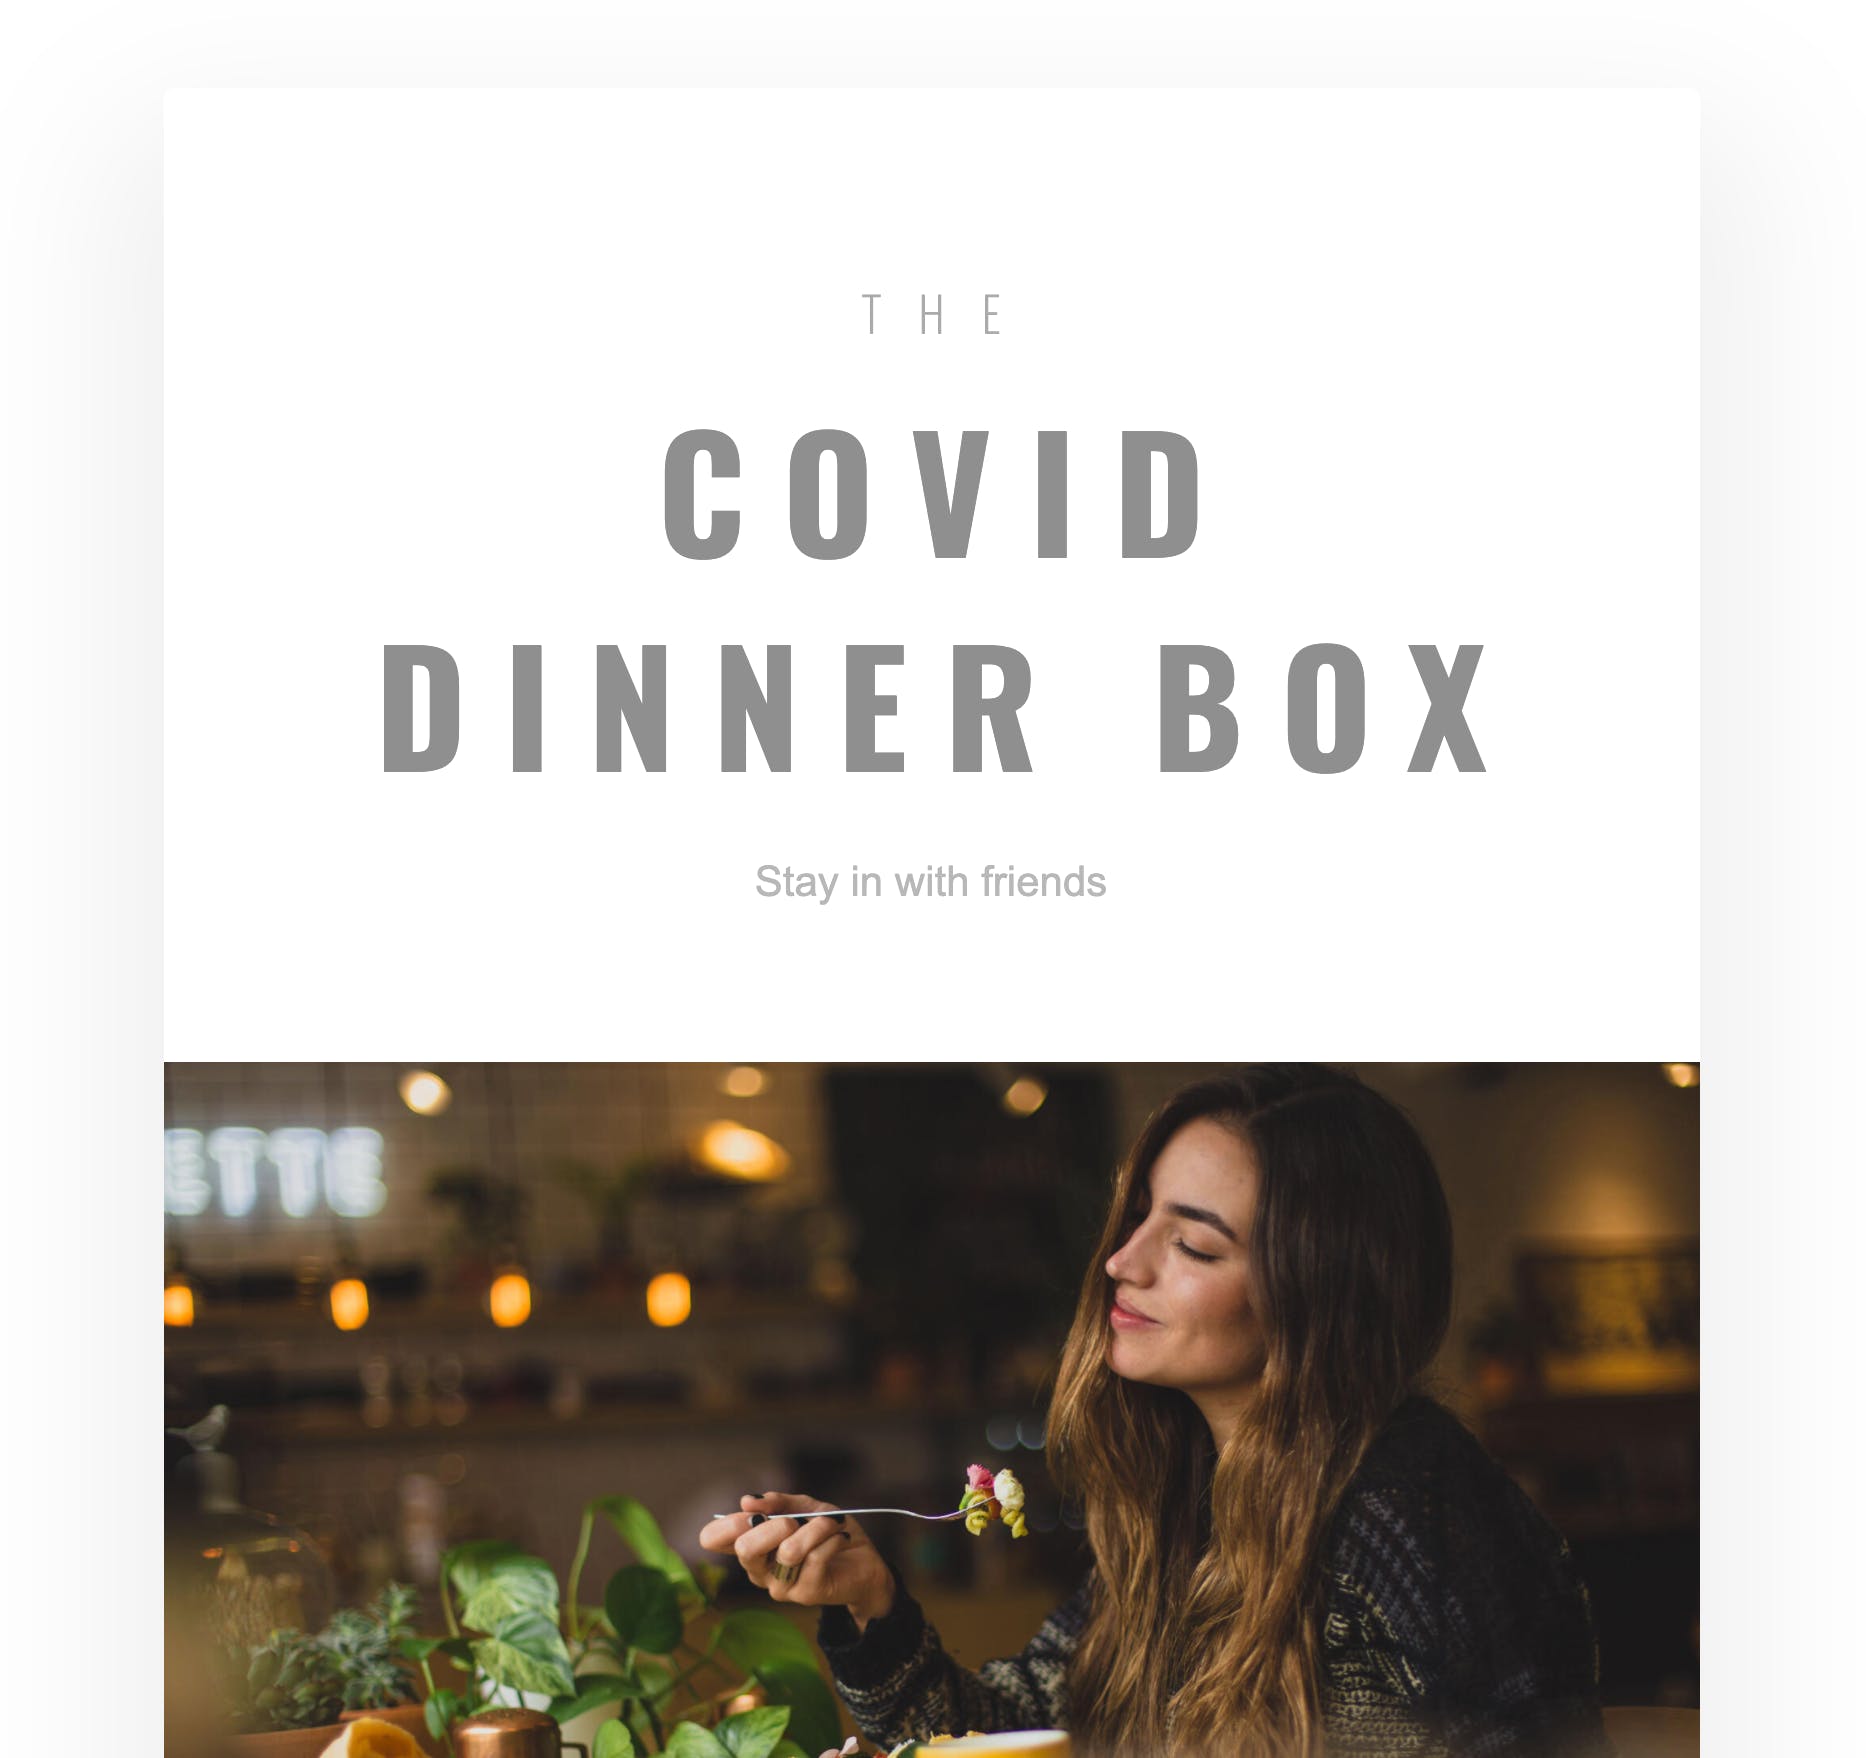 Covid Dinner Box media 1